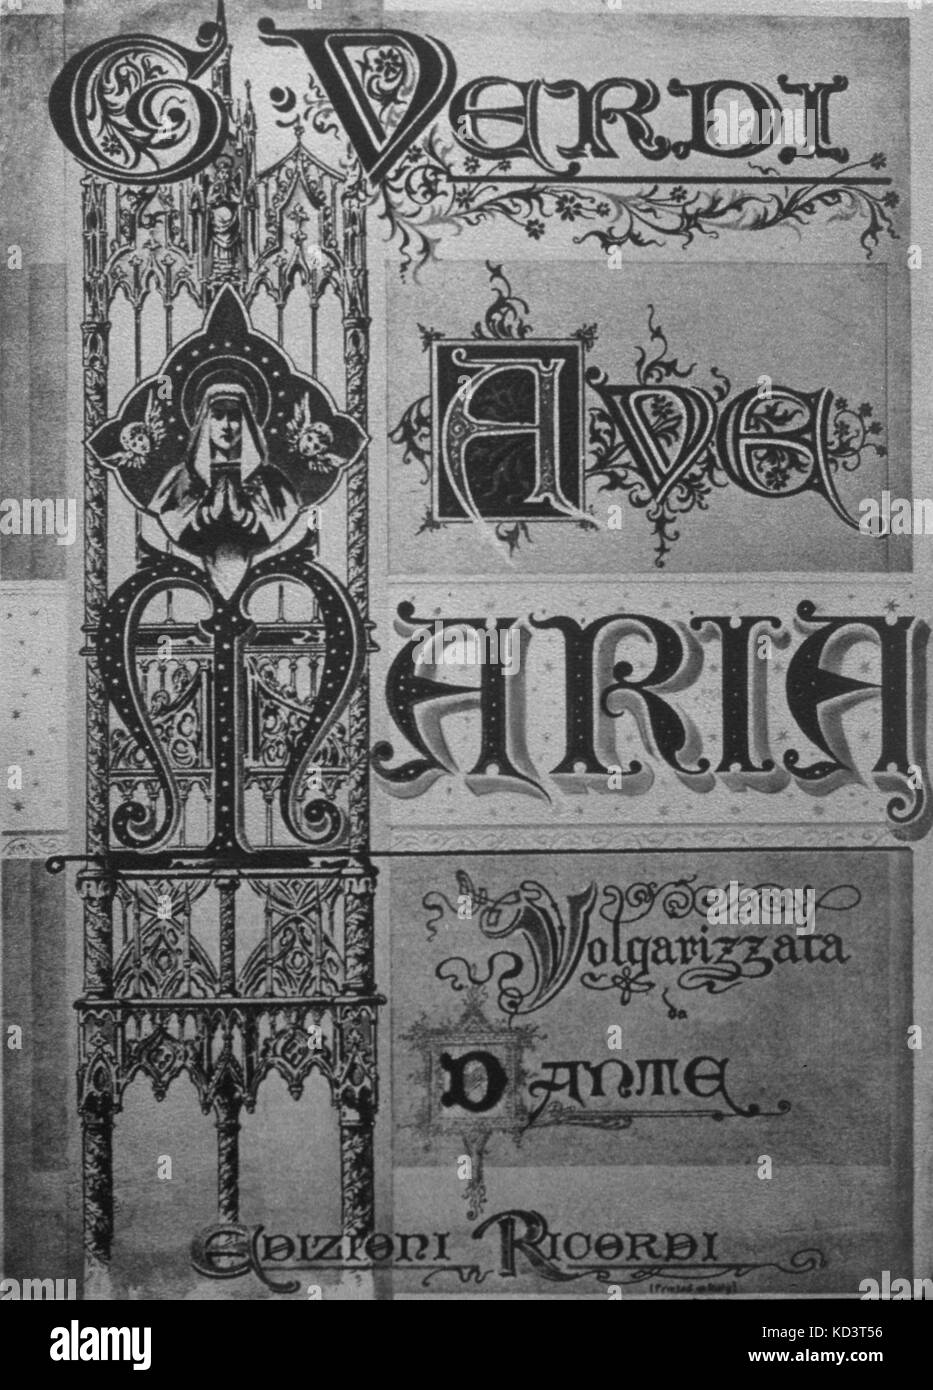 VERDI - AVE MARIA - AVE MARIA DE TITLEPAGE édition Ricordi, traduit par Dante. Compositeur italien (1813-1901) Banque D'Images